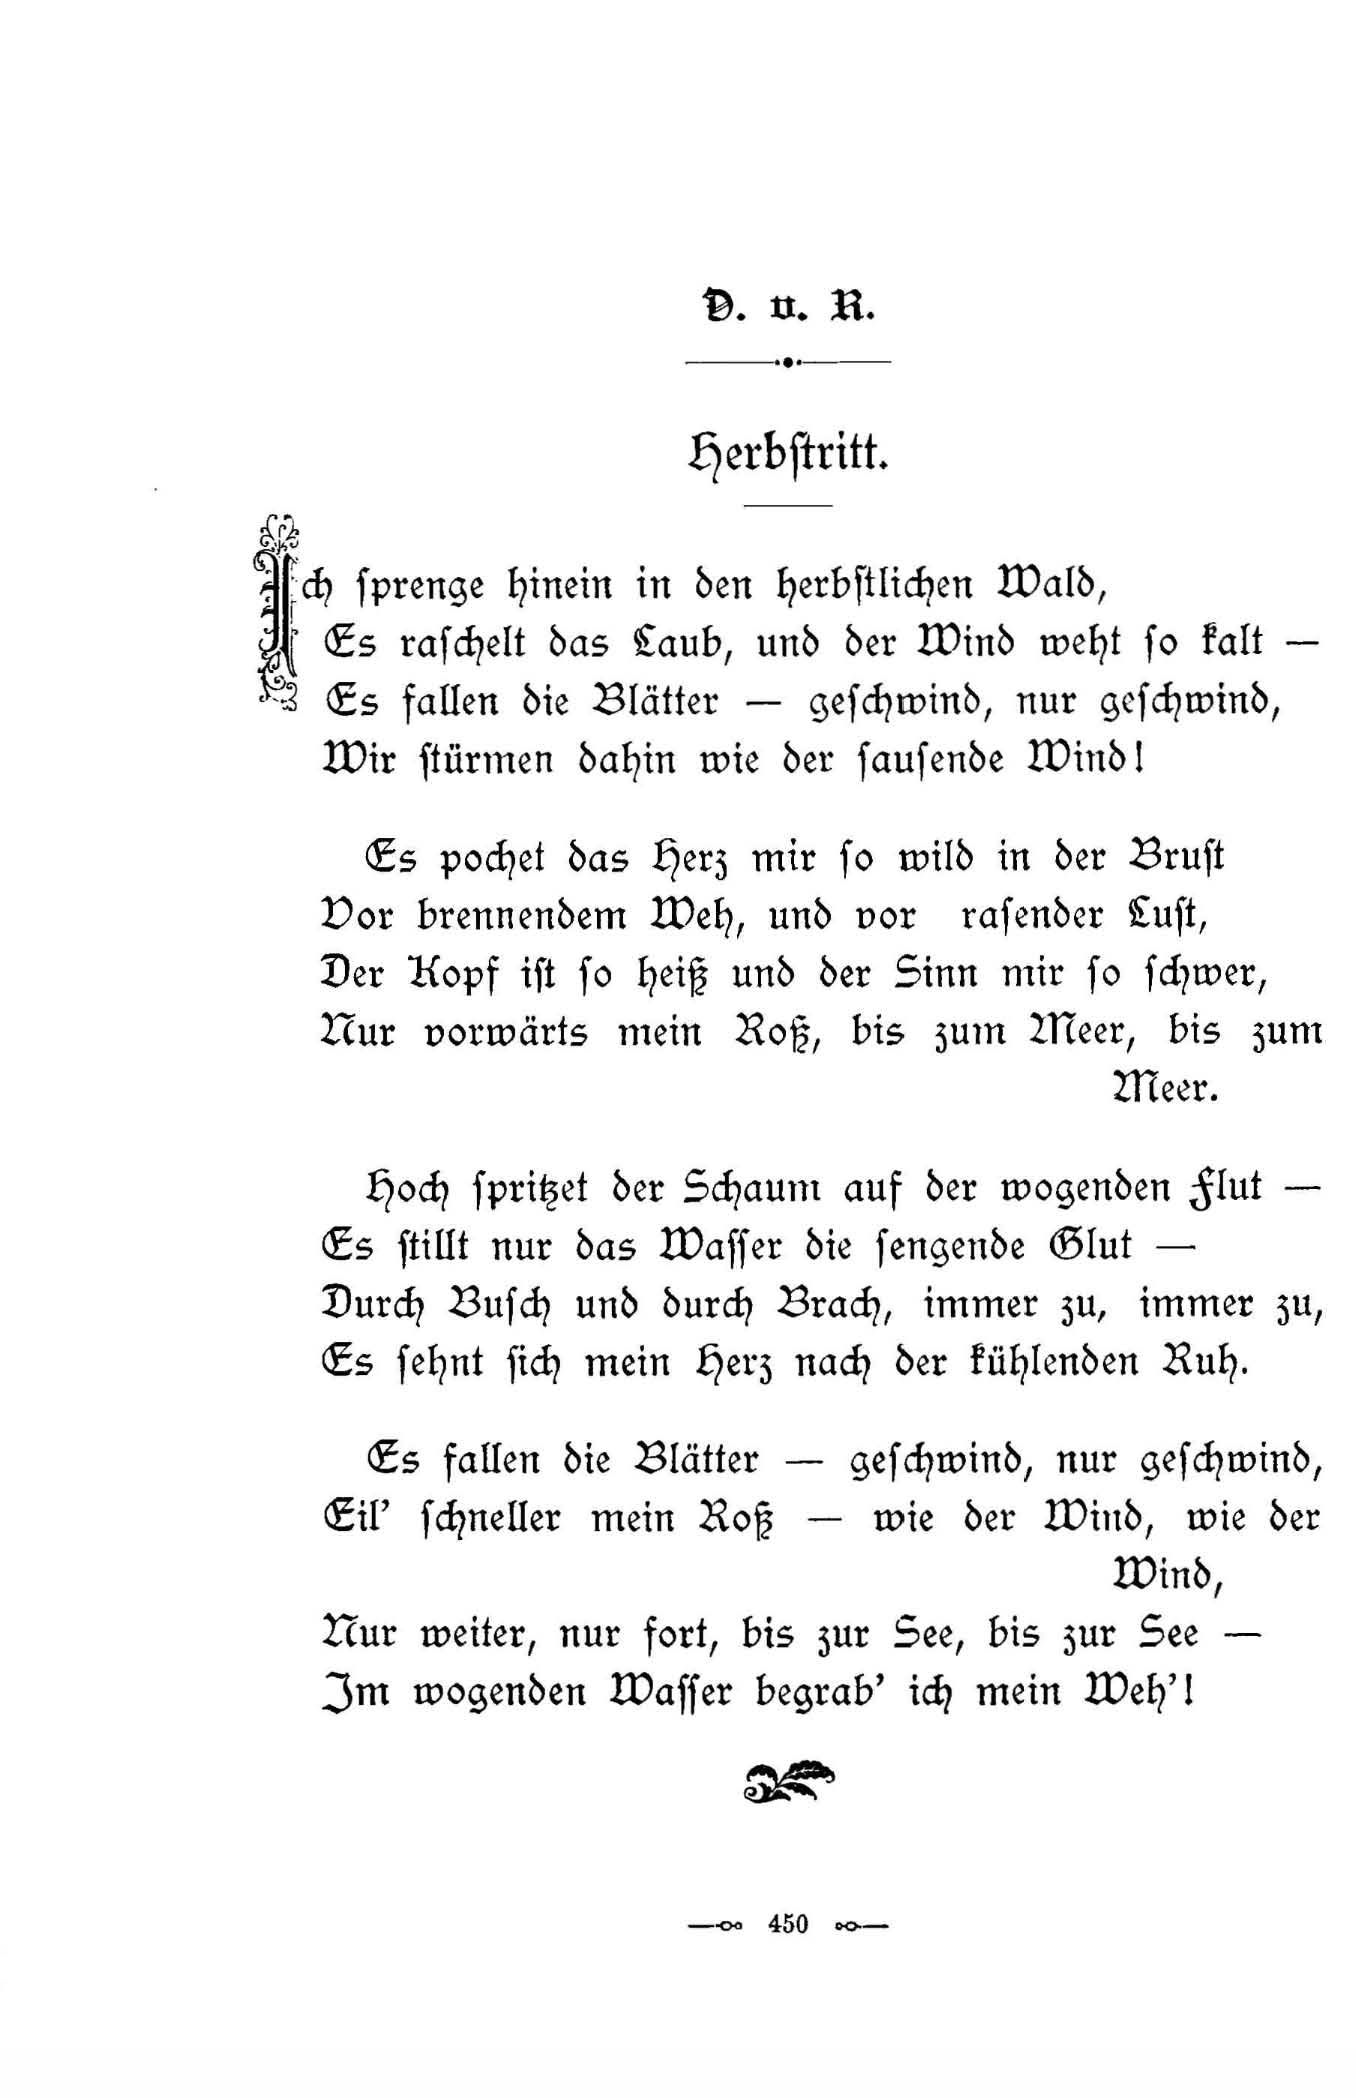 Herbstritt (1896) | 1. (450) Haupttext